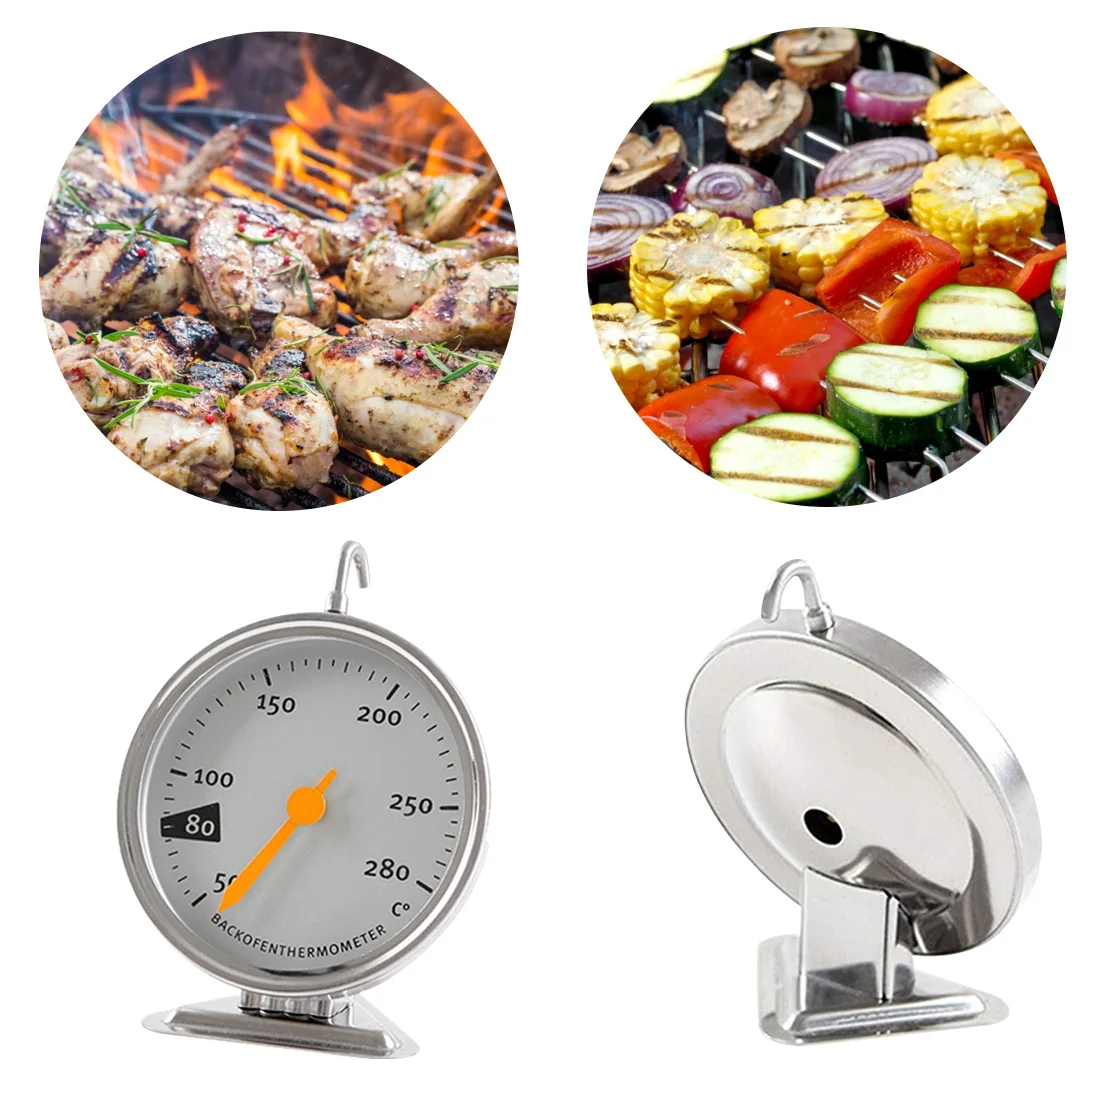 

Термометр из нержавеющей стали для духовки, прибор с большим циферблатом для измерения температуры пищи, выпечки, барбекю, мяса